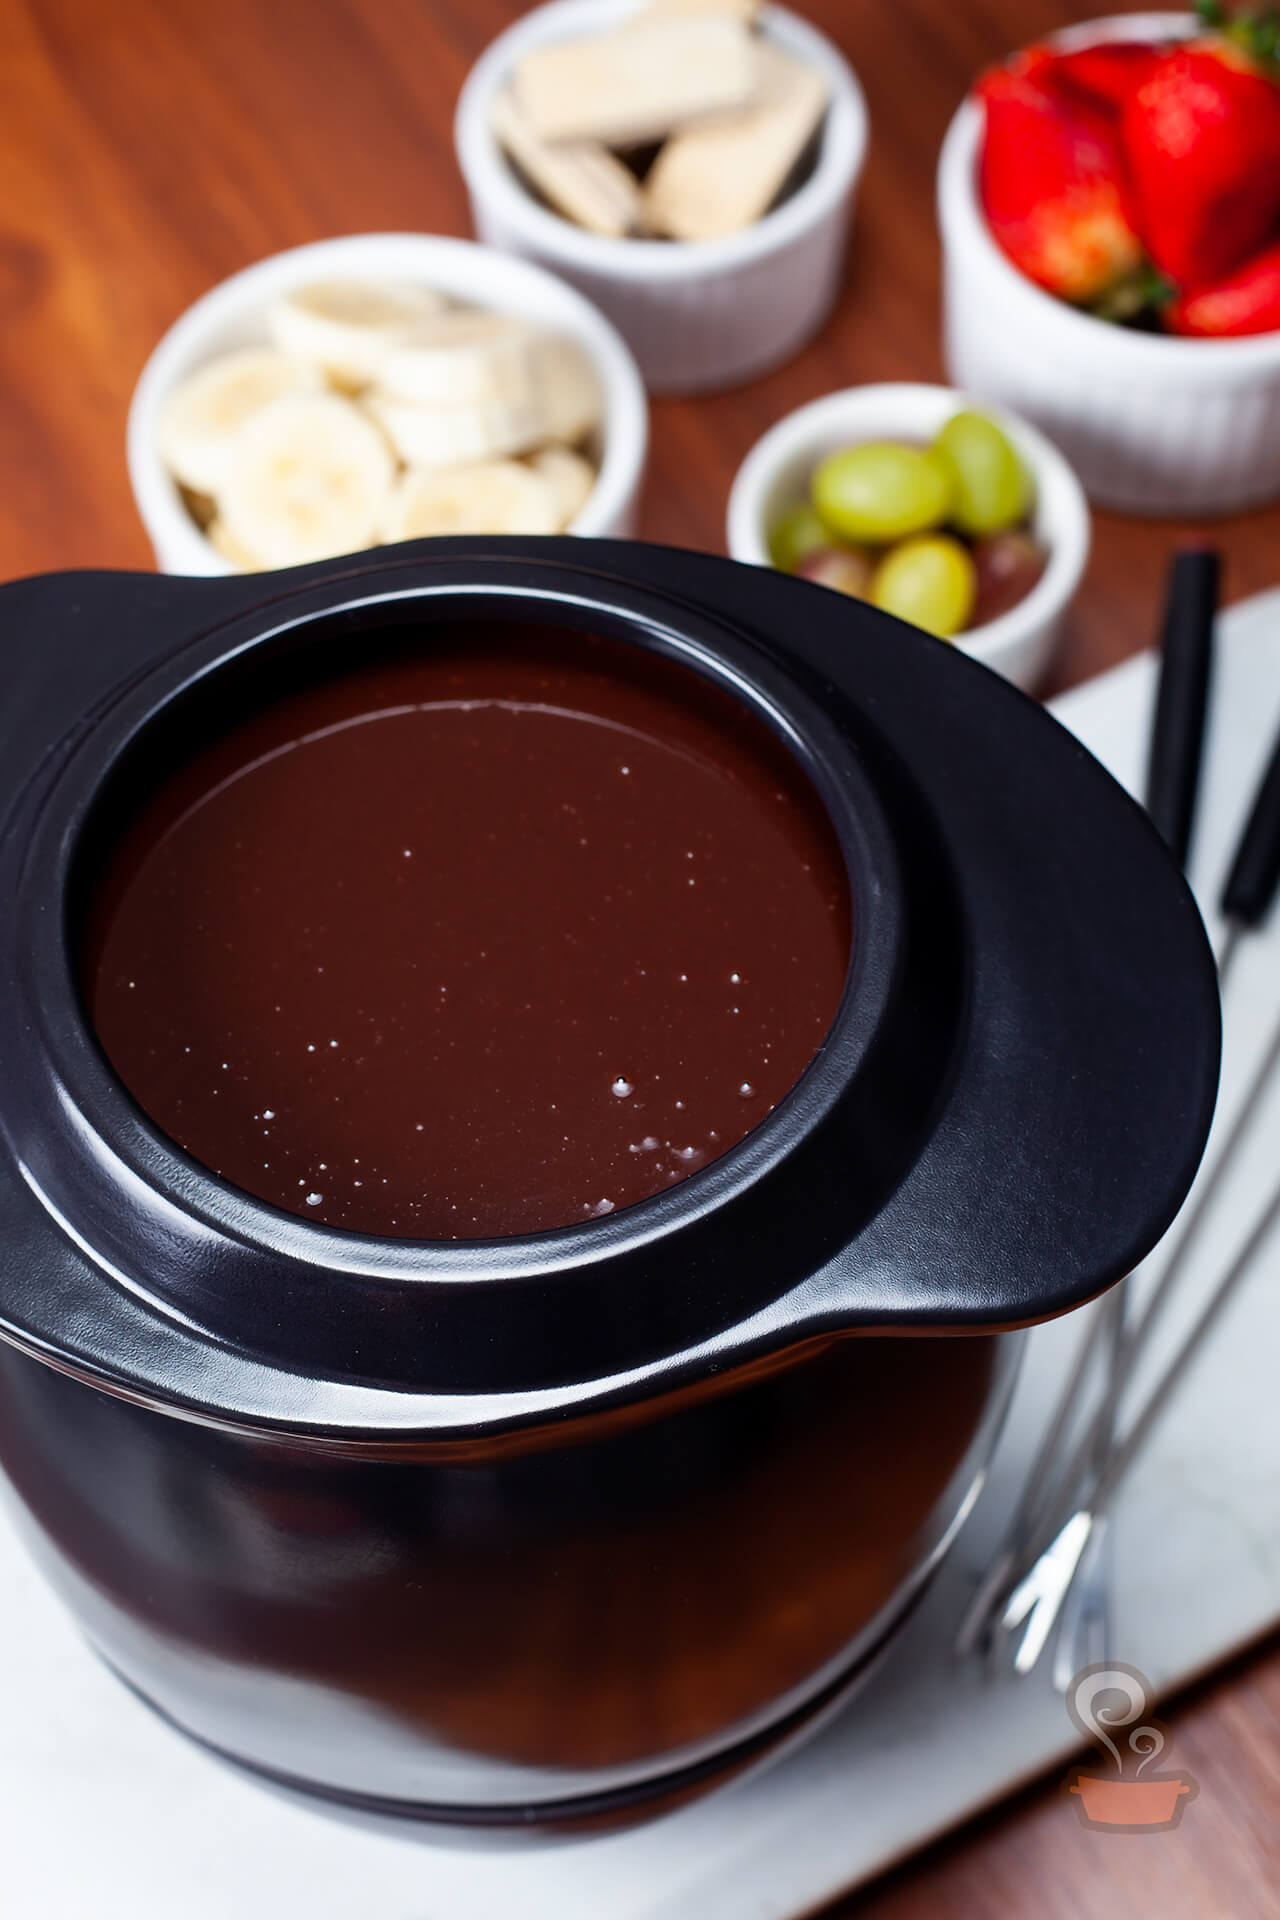 fondue de chocolate perfeito - foto: naminhapanela.com